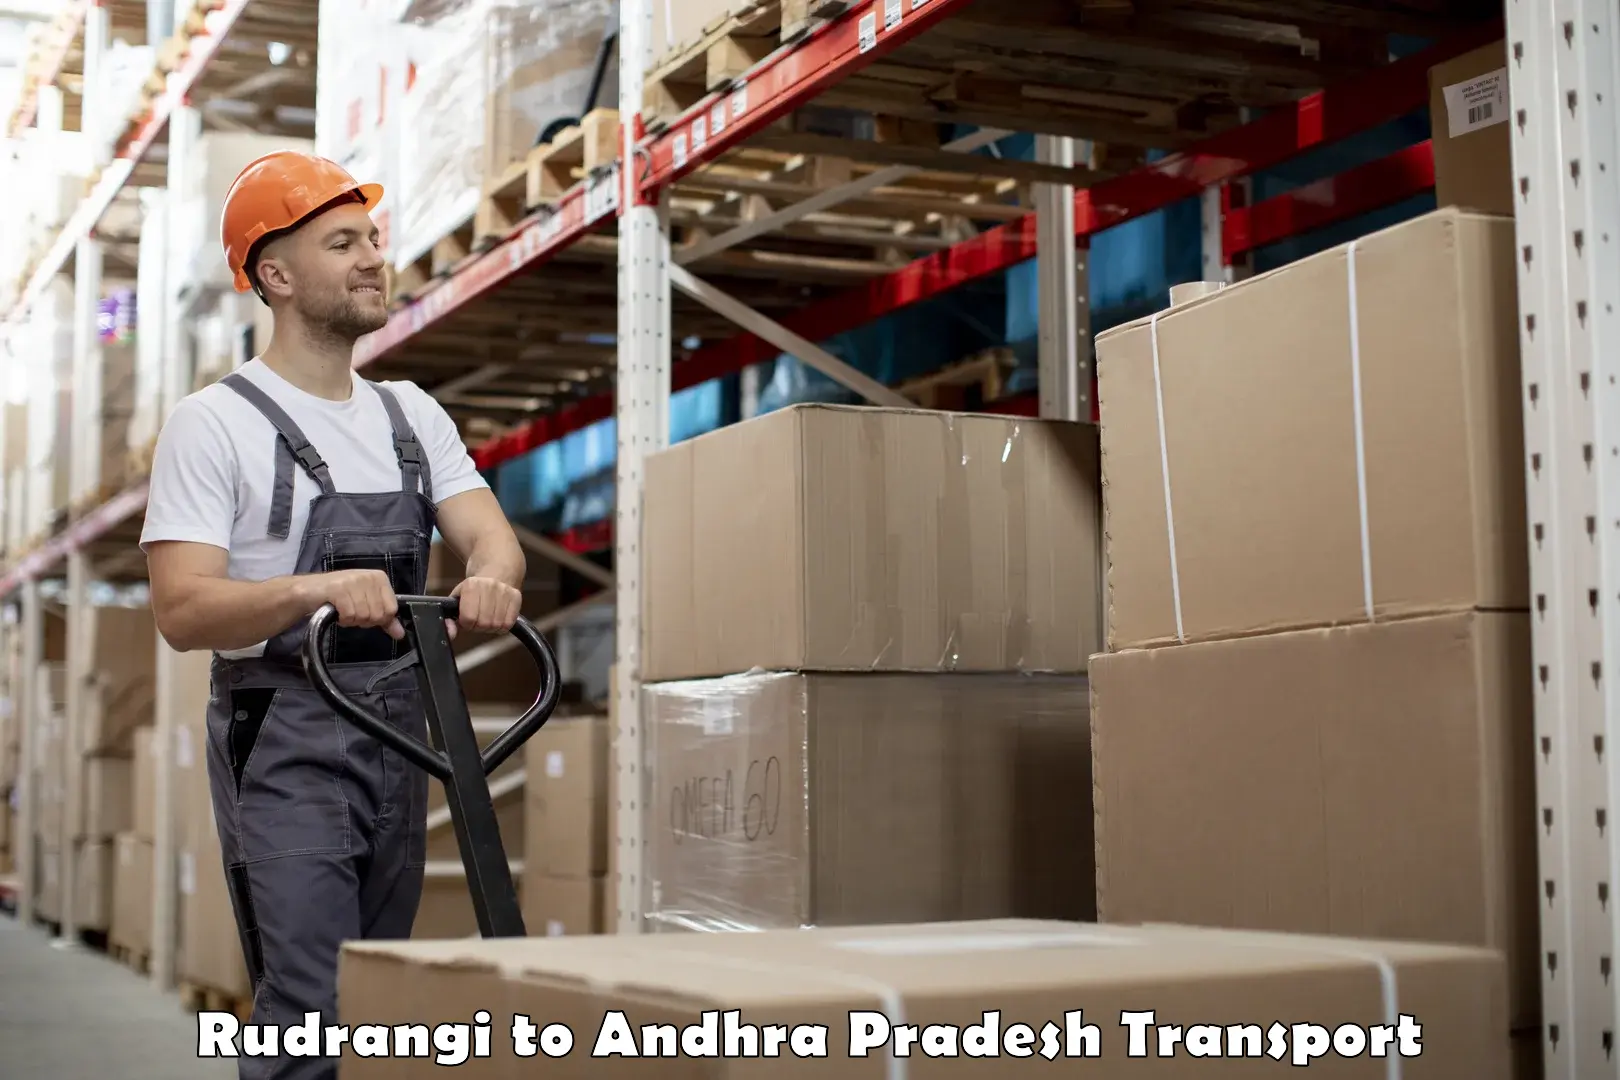 Road transport online services Rudrangi to Annavaram